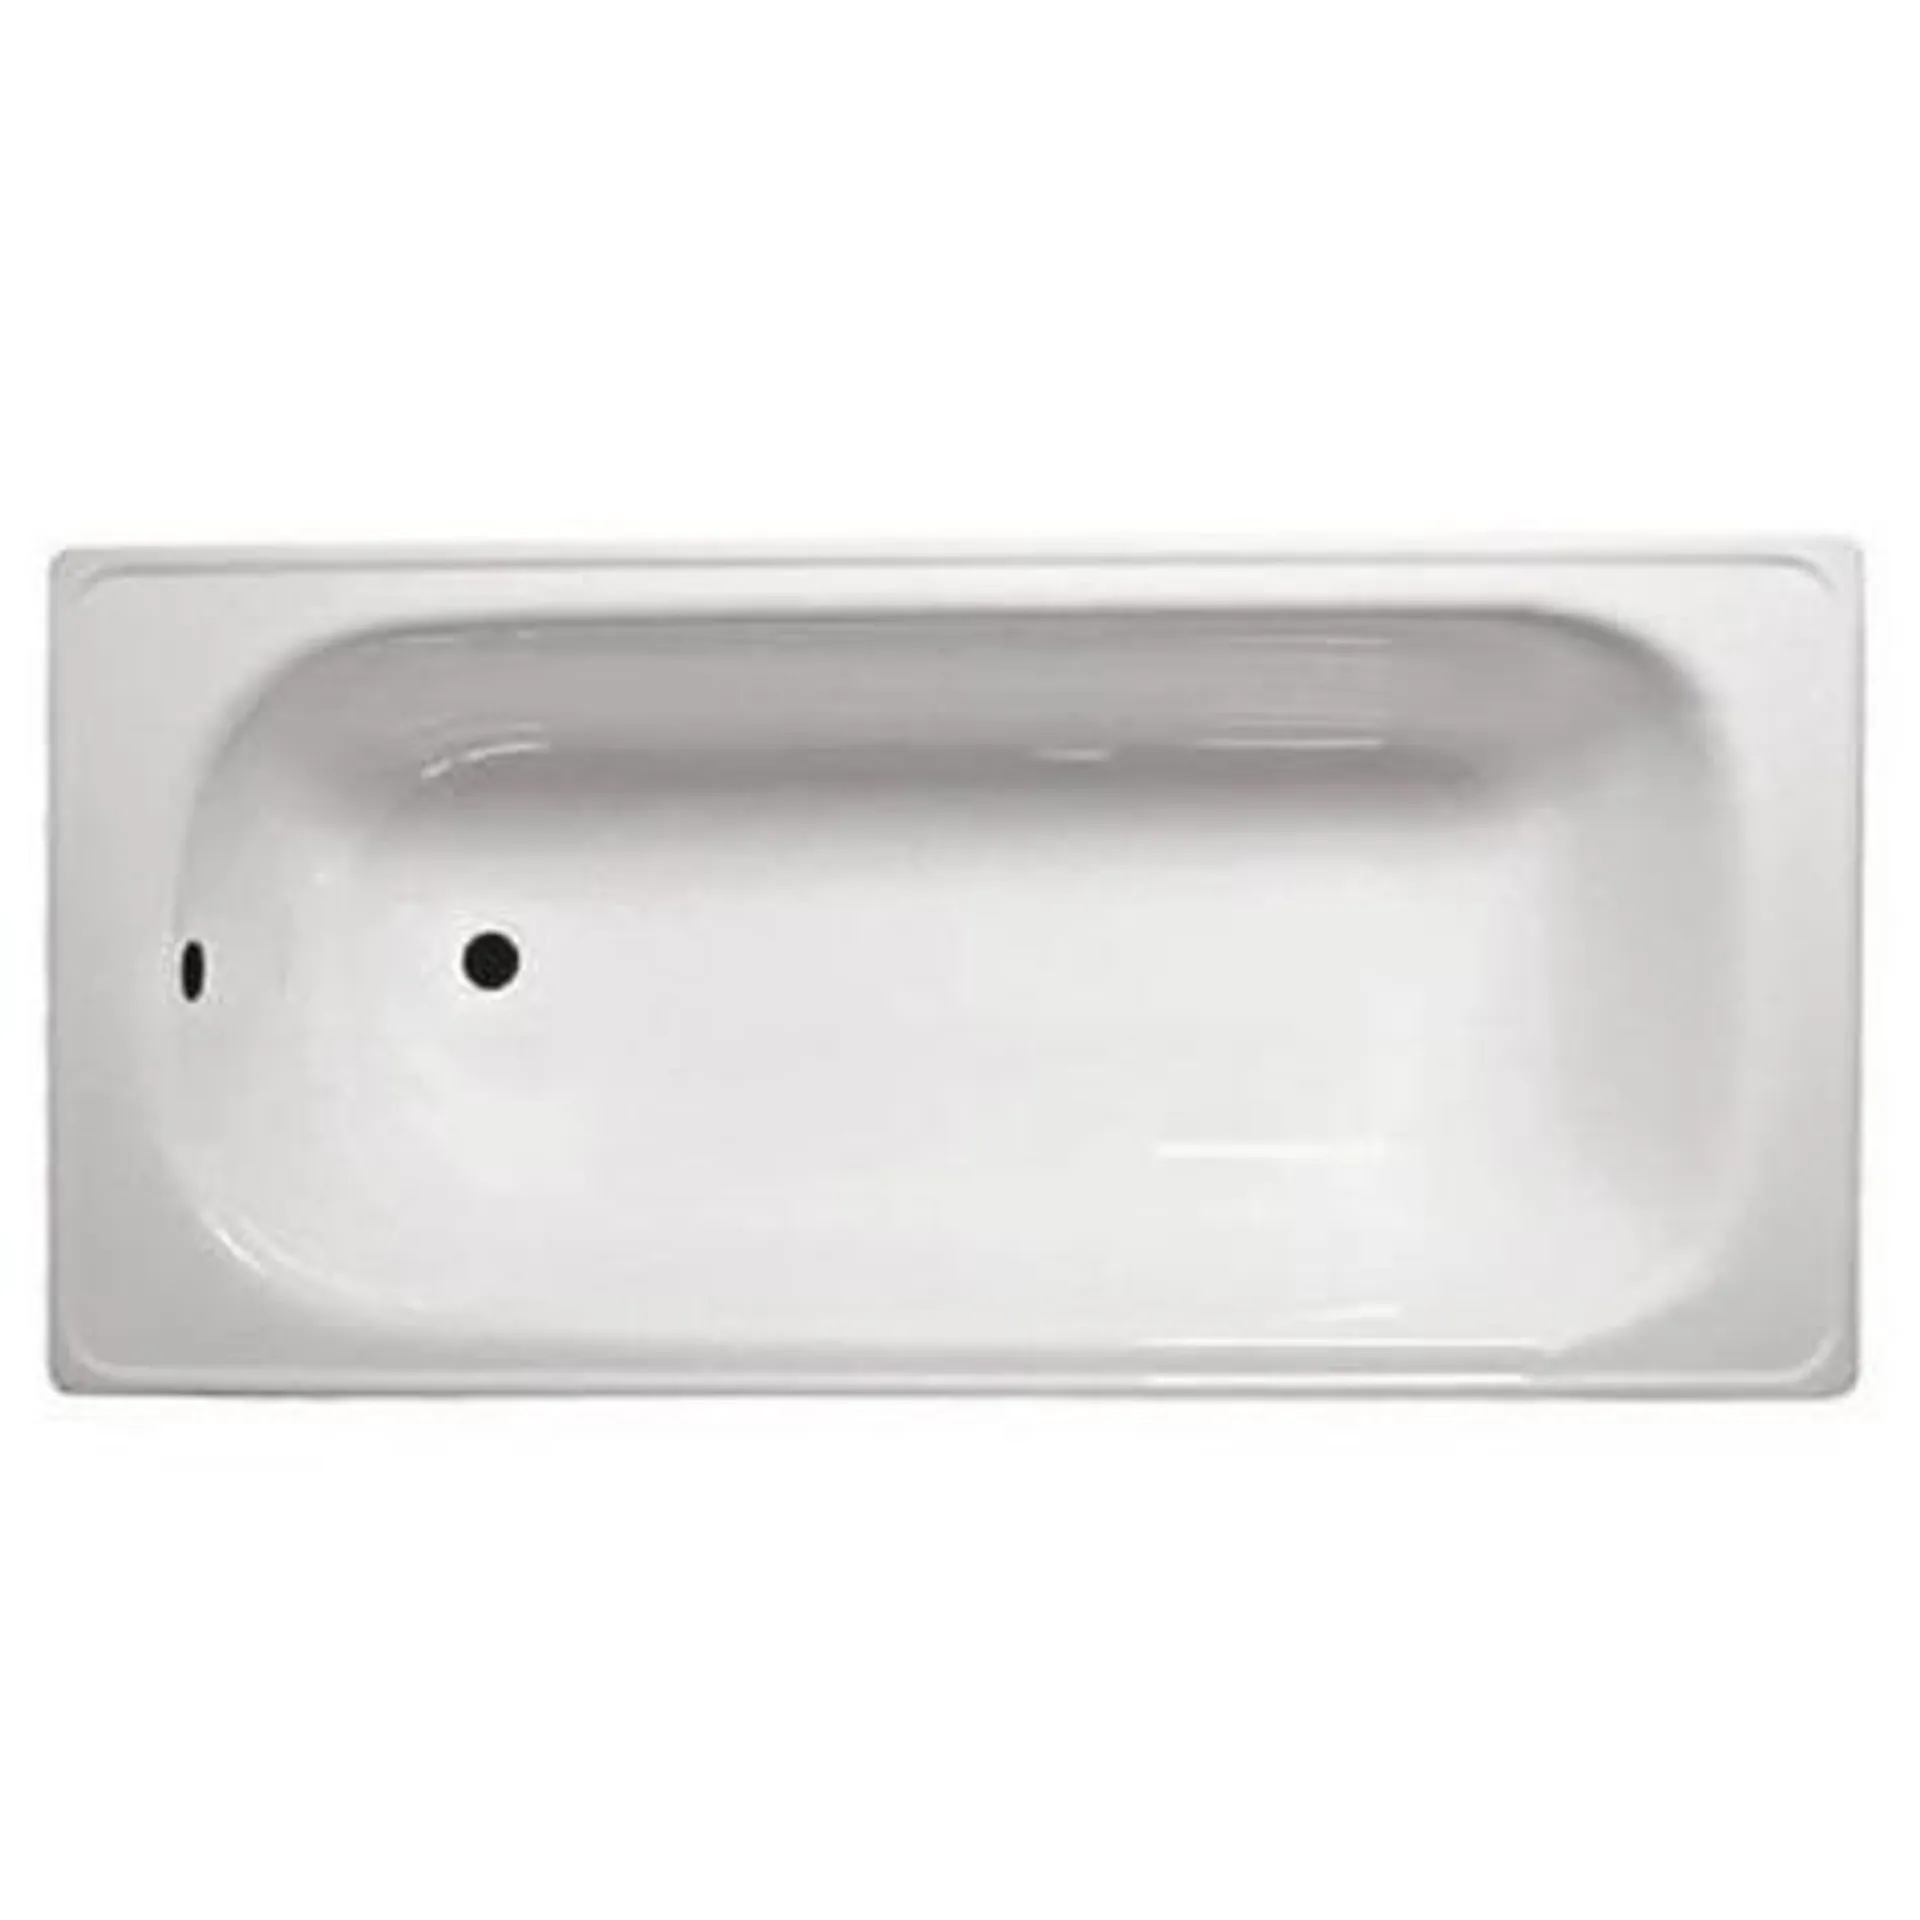 Tina de baño blanca 140x70 cm